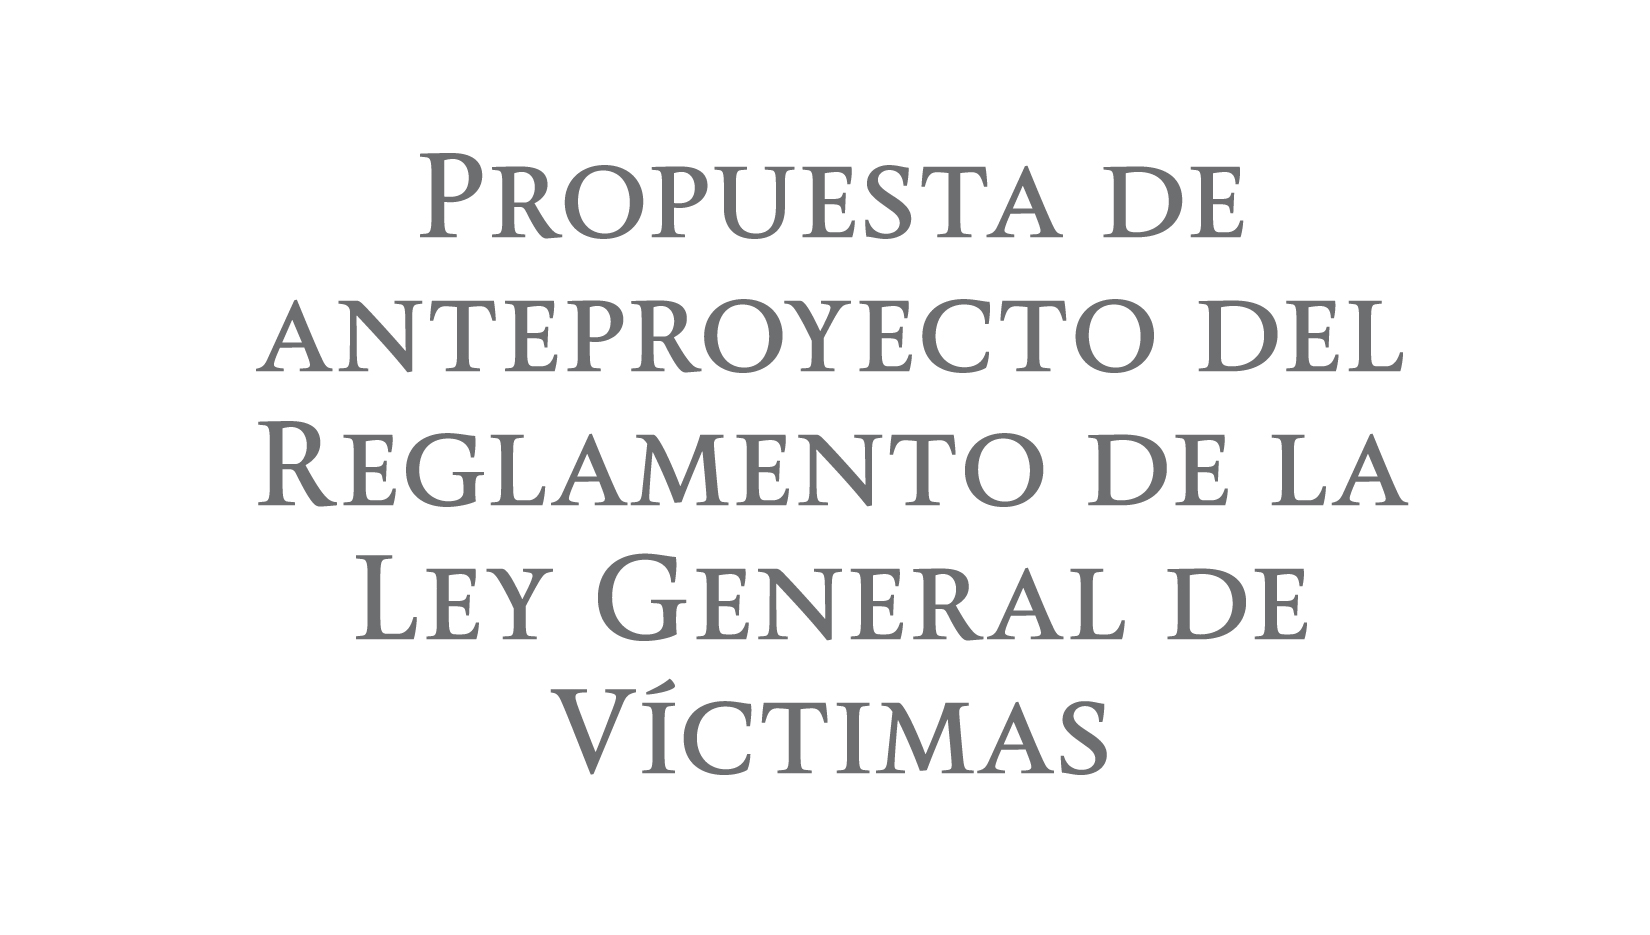 Propuesta de anteproyecto del Reglamento de la Ley General de Víctimas